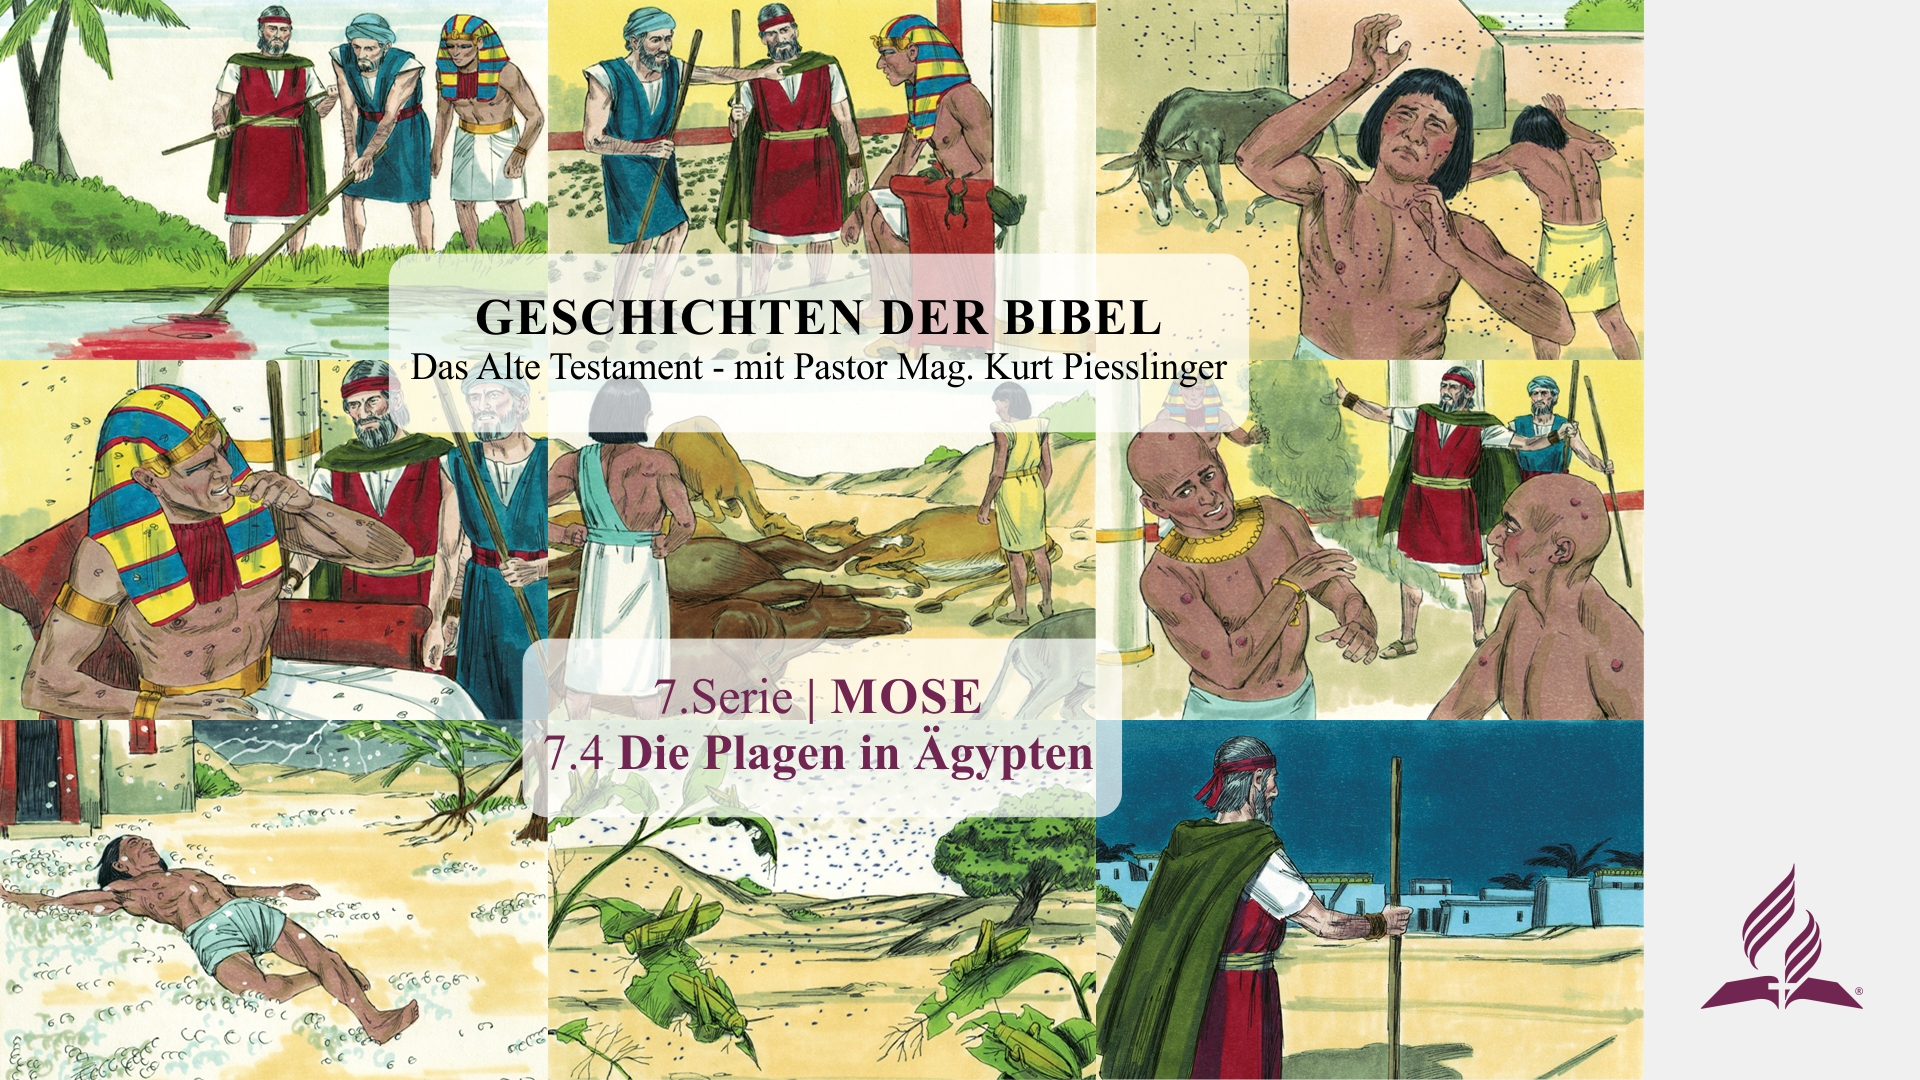 GESCHICHTEN DER BIBEL: 7.4 Die Plagen in Ägypten – 7.MOSE | Pastor Mag. Kurt Piesslinger